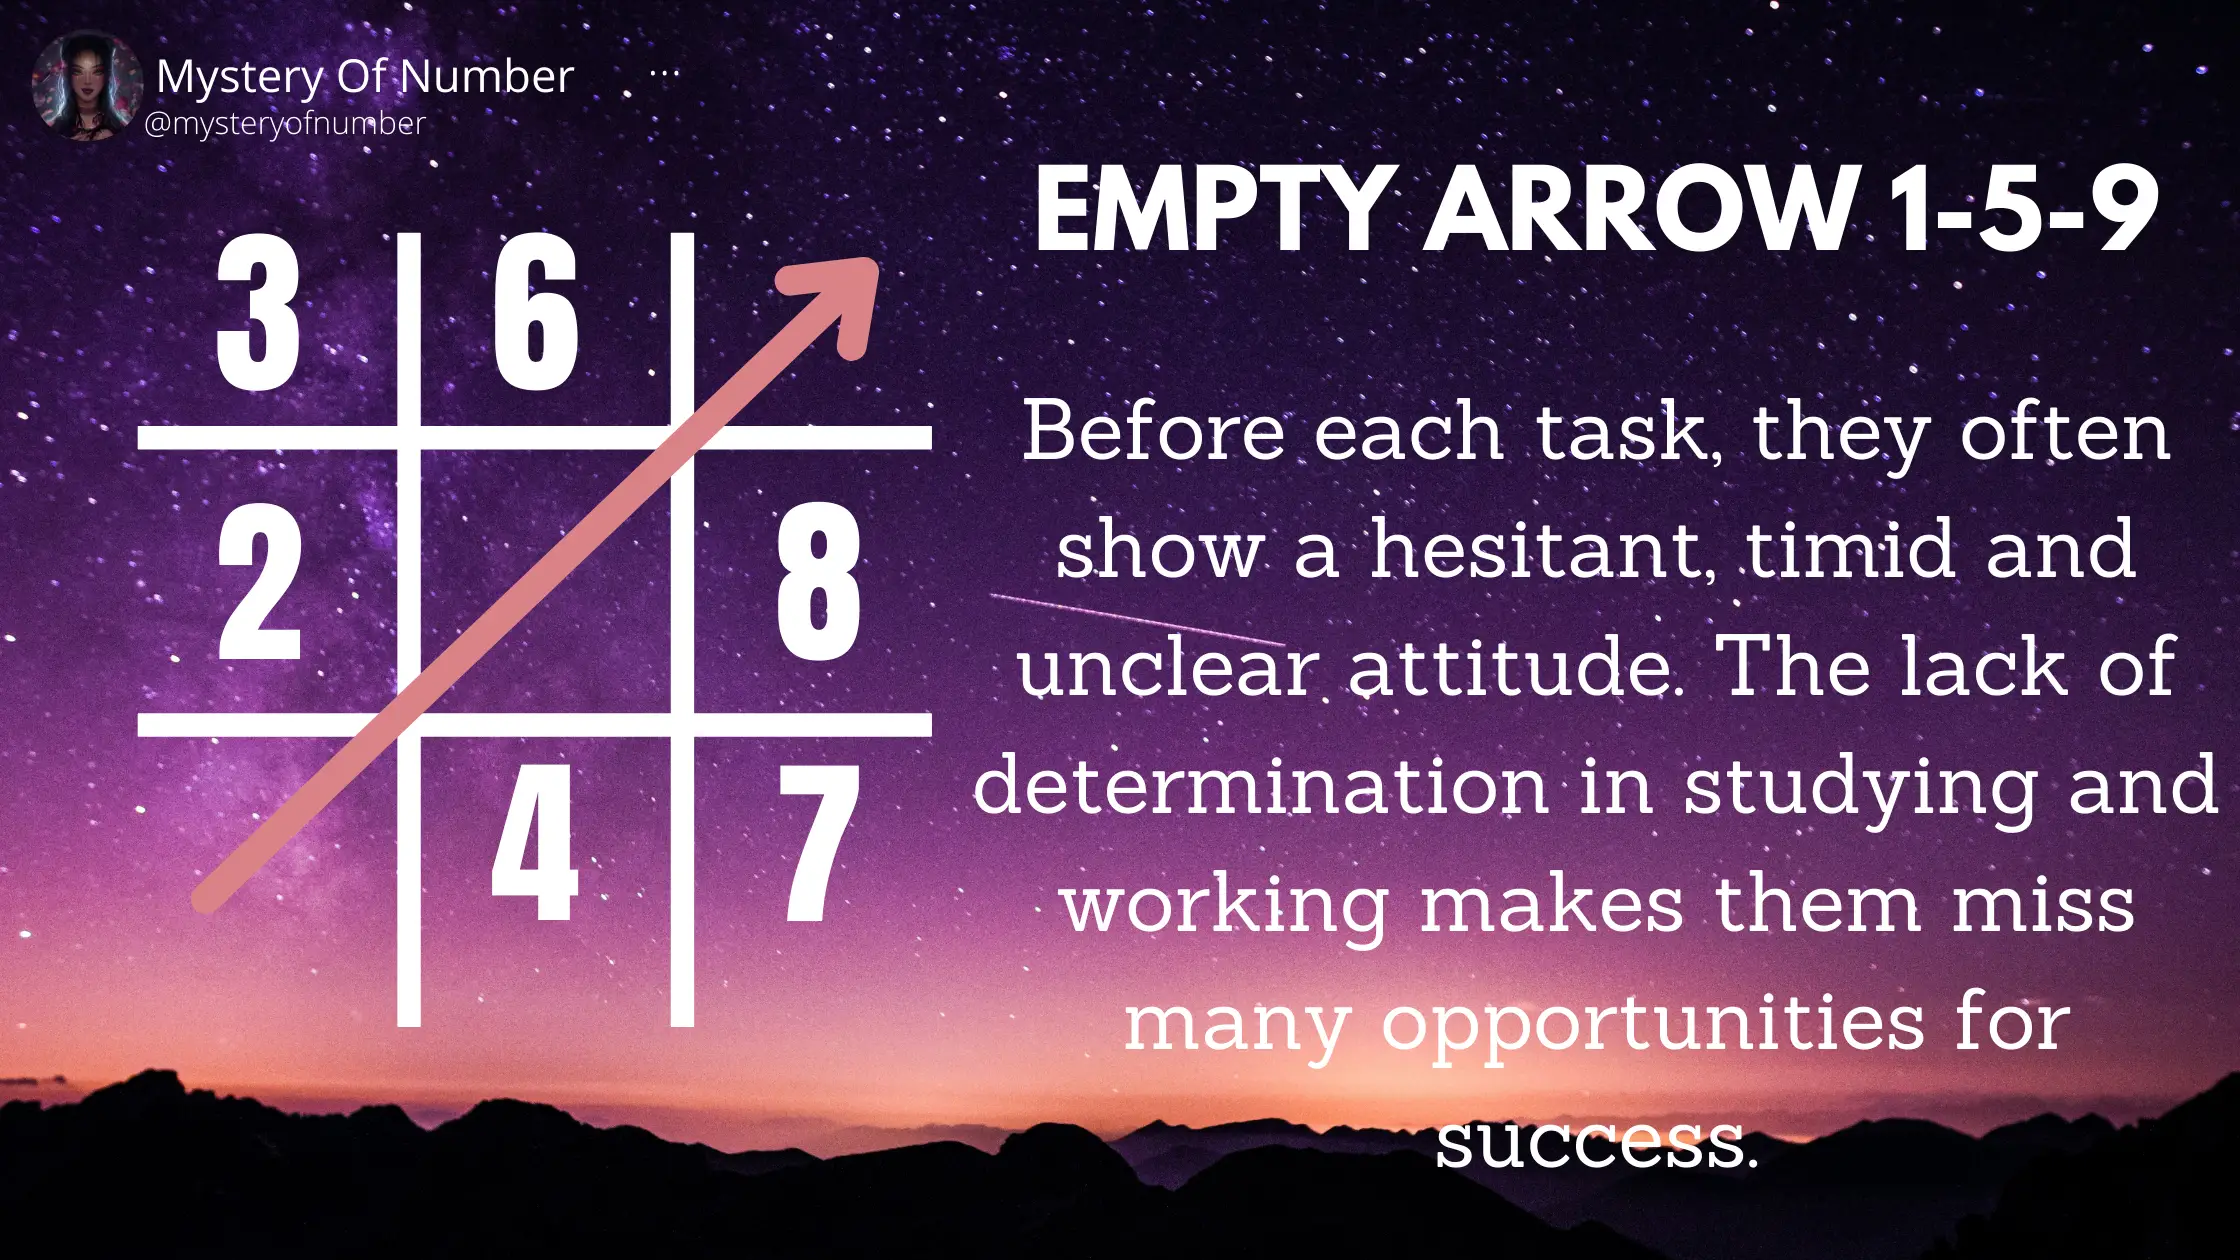 Empty arrow 1-5-9: Empty arrows in numerology